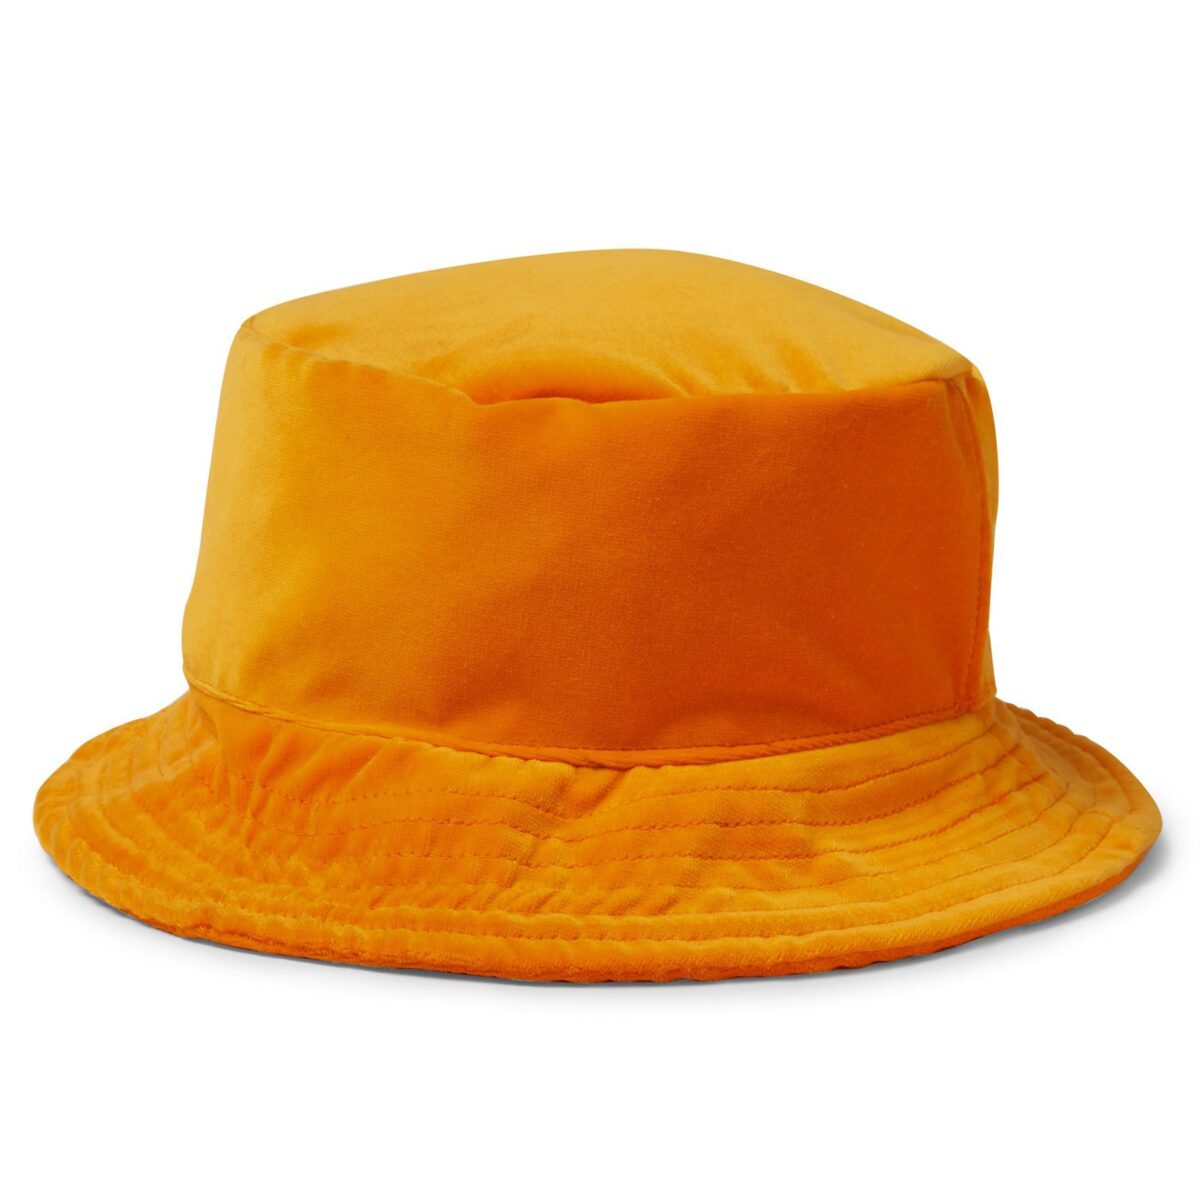 Gallery Dept Rodman Velvet Bucket Hat